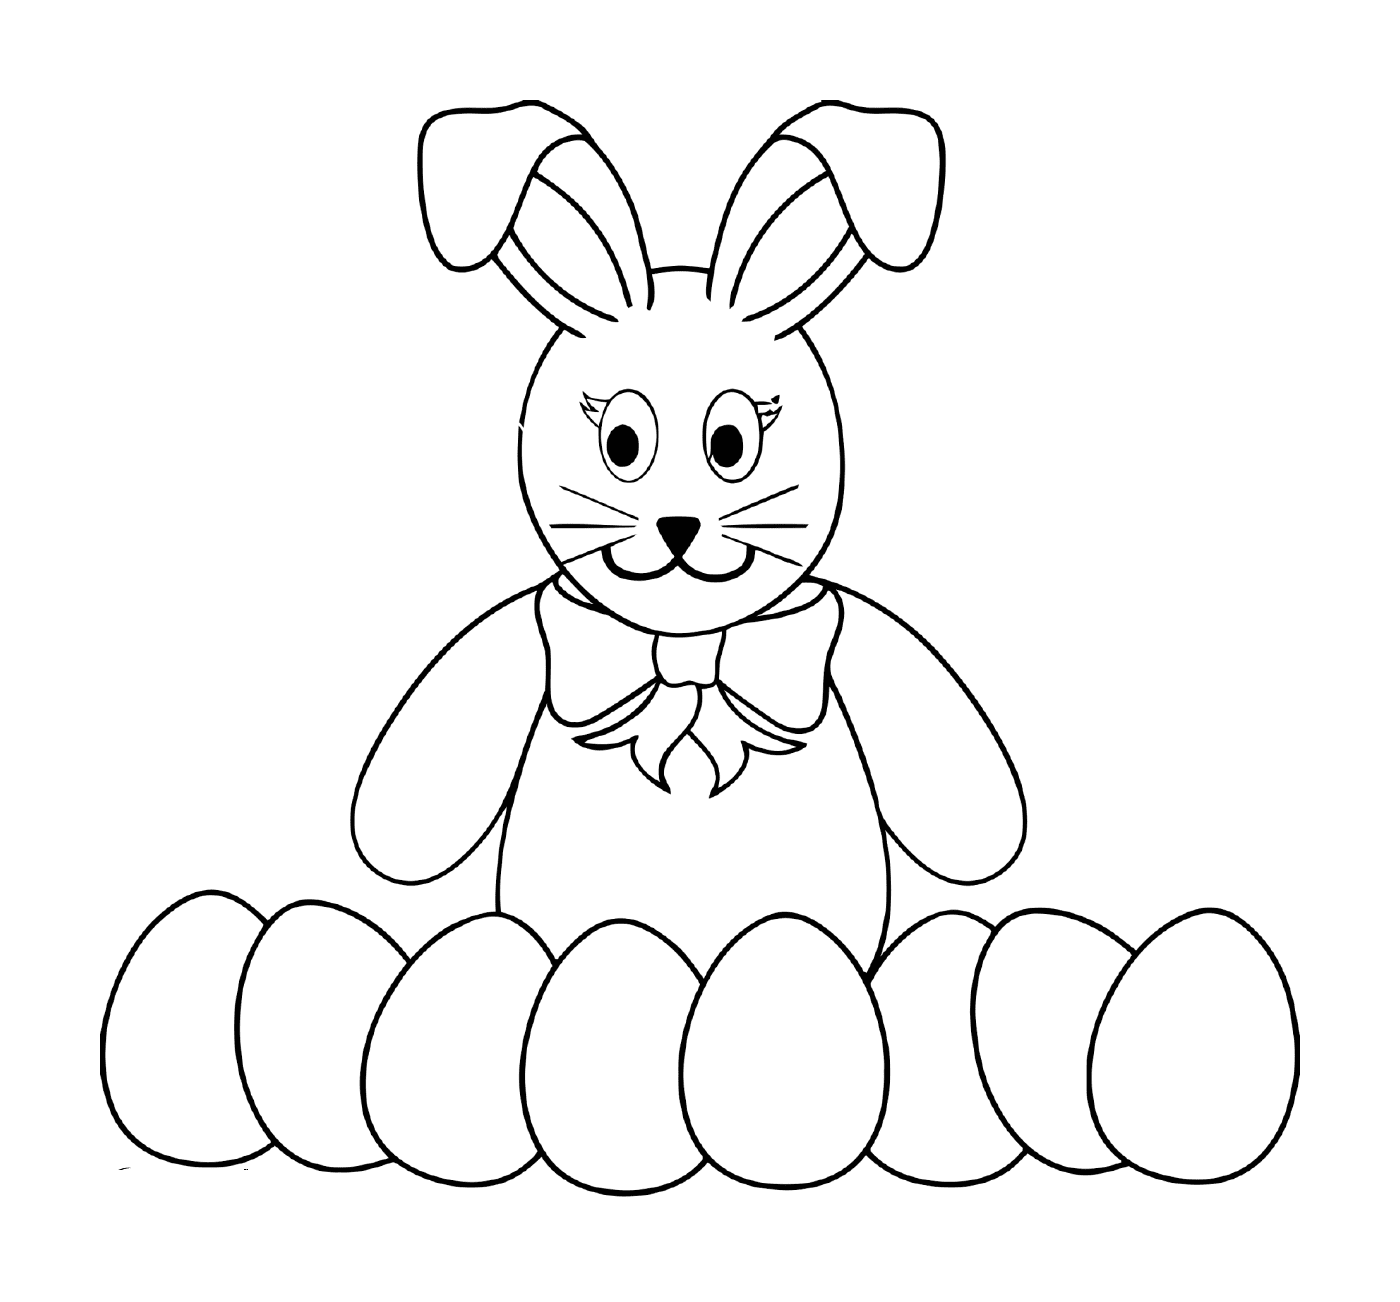  أرنب مع العديد من بيضات الفصح 